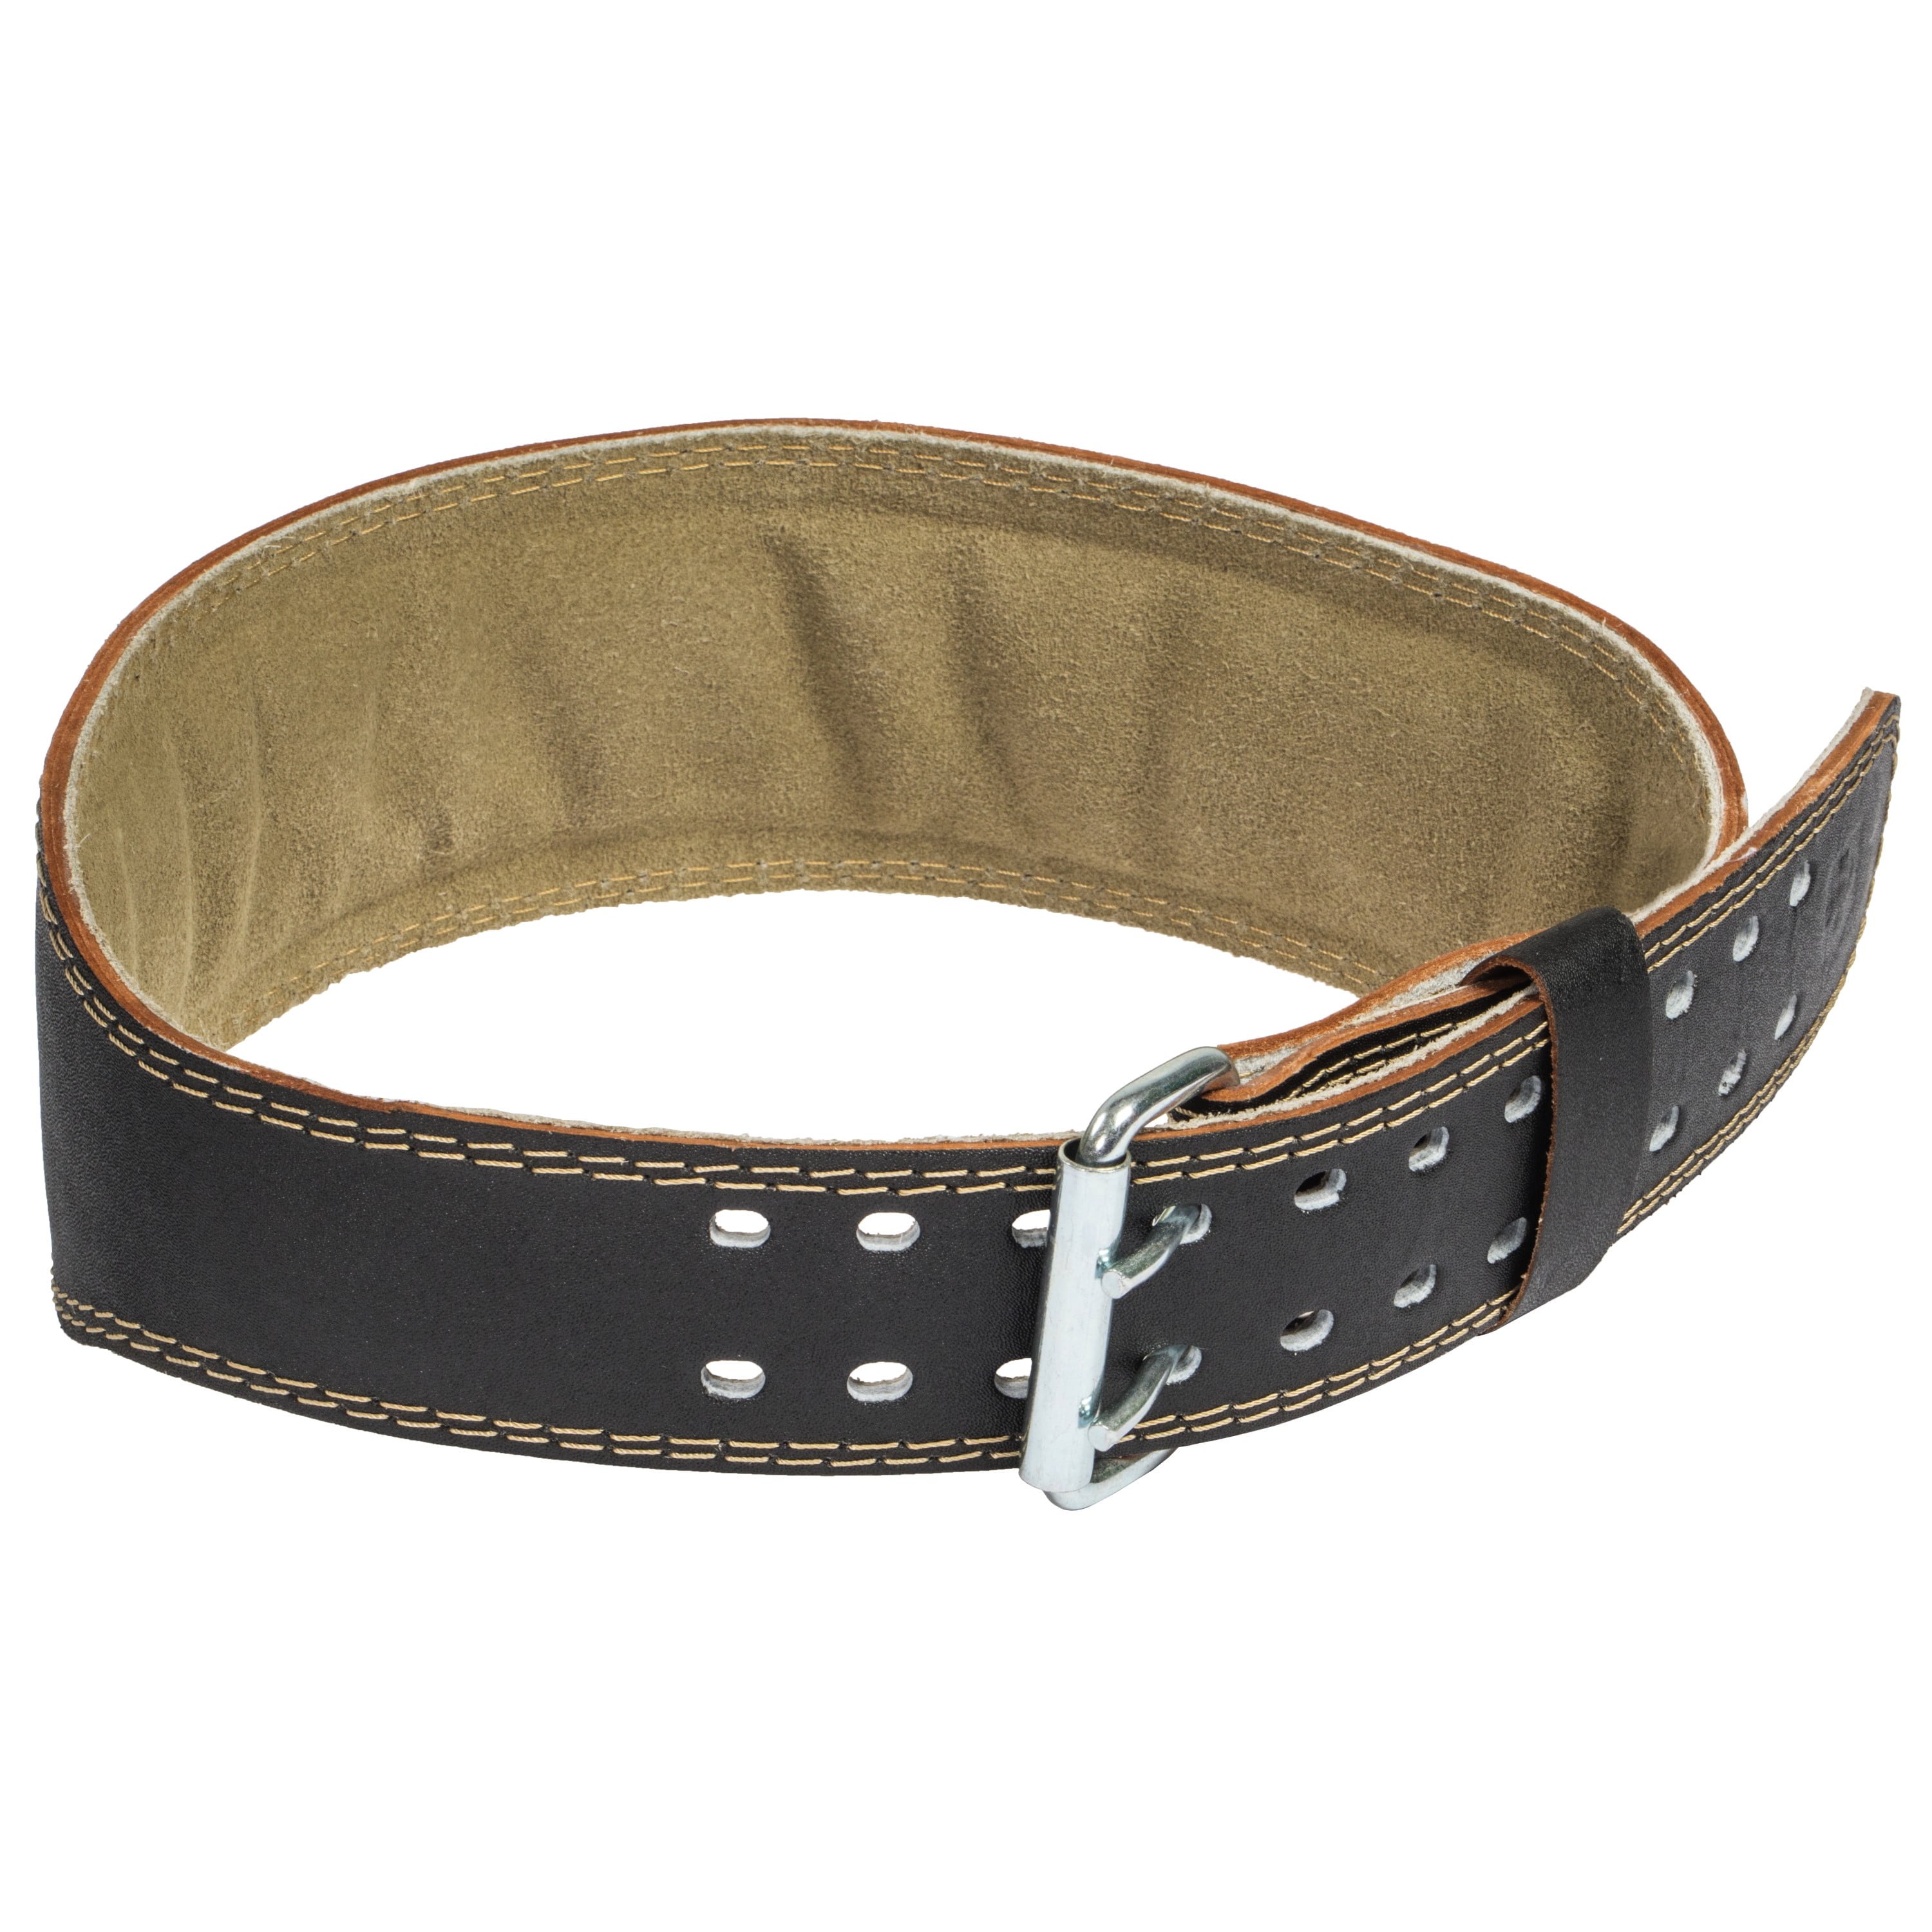 Valeo VRL4 Leather 4" Padded Lifting Belt for sale online 